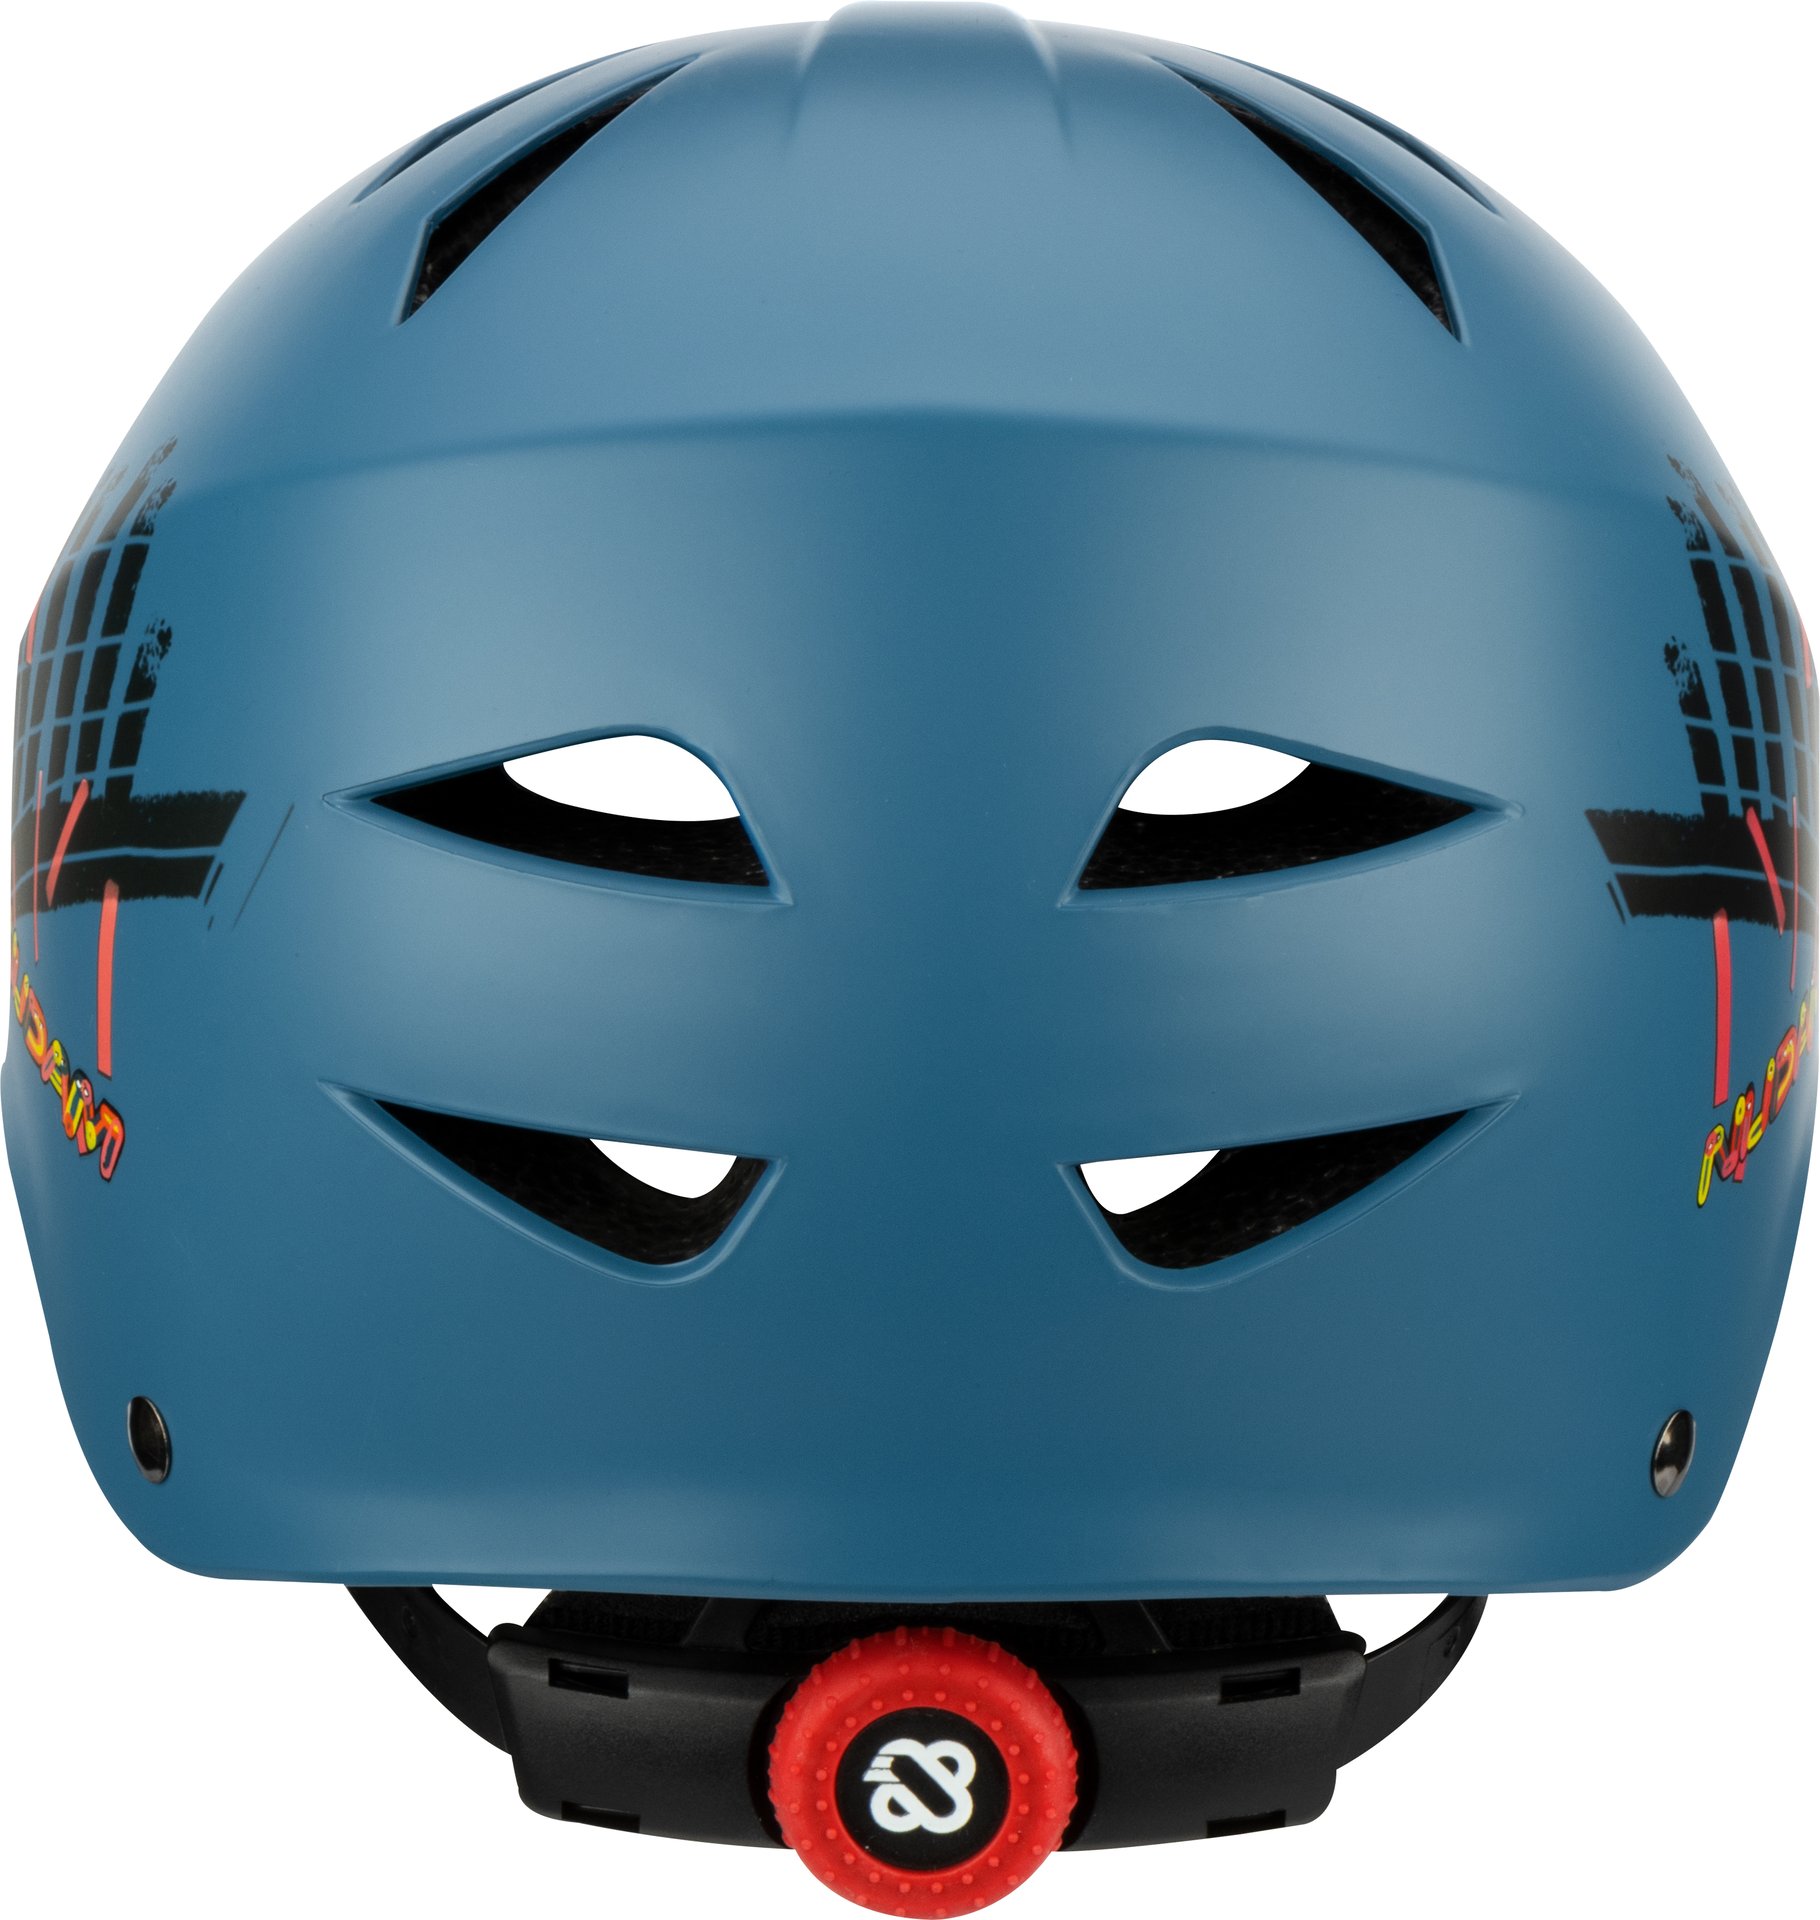 Skate Helmet - Sidewalk Sentinel